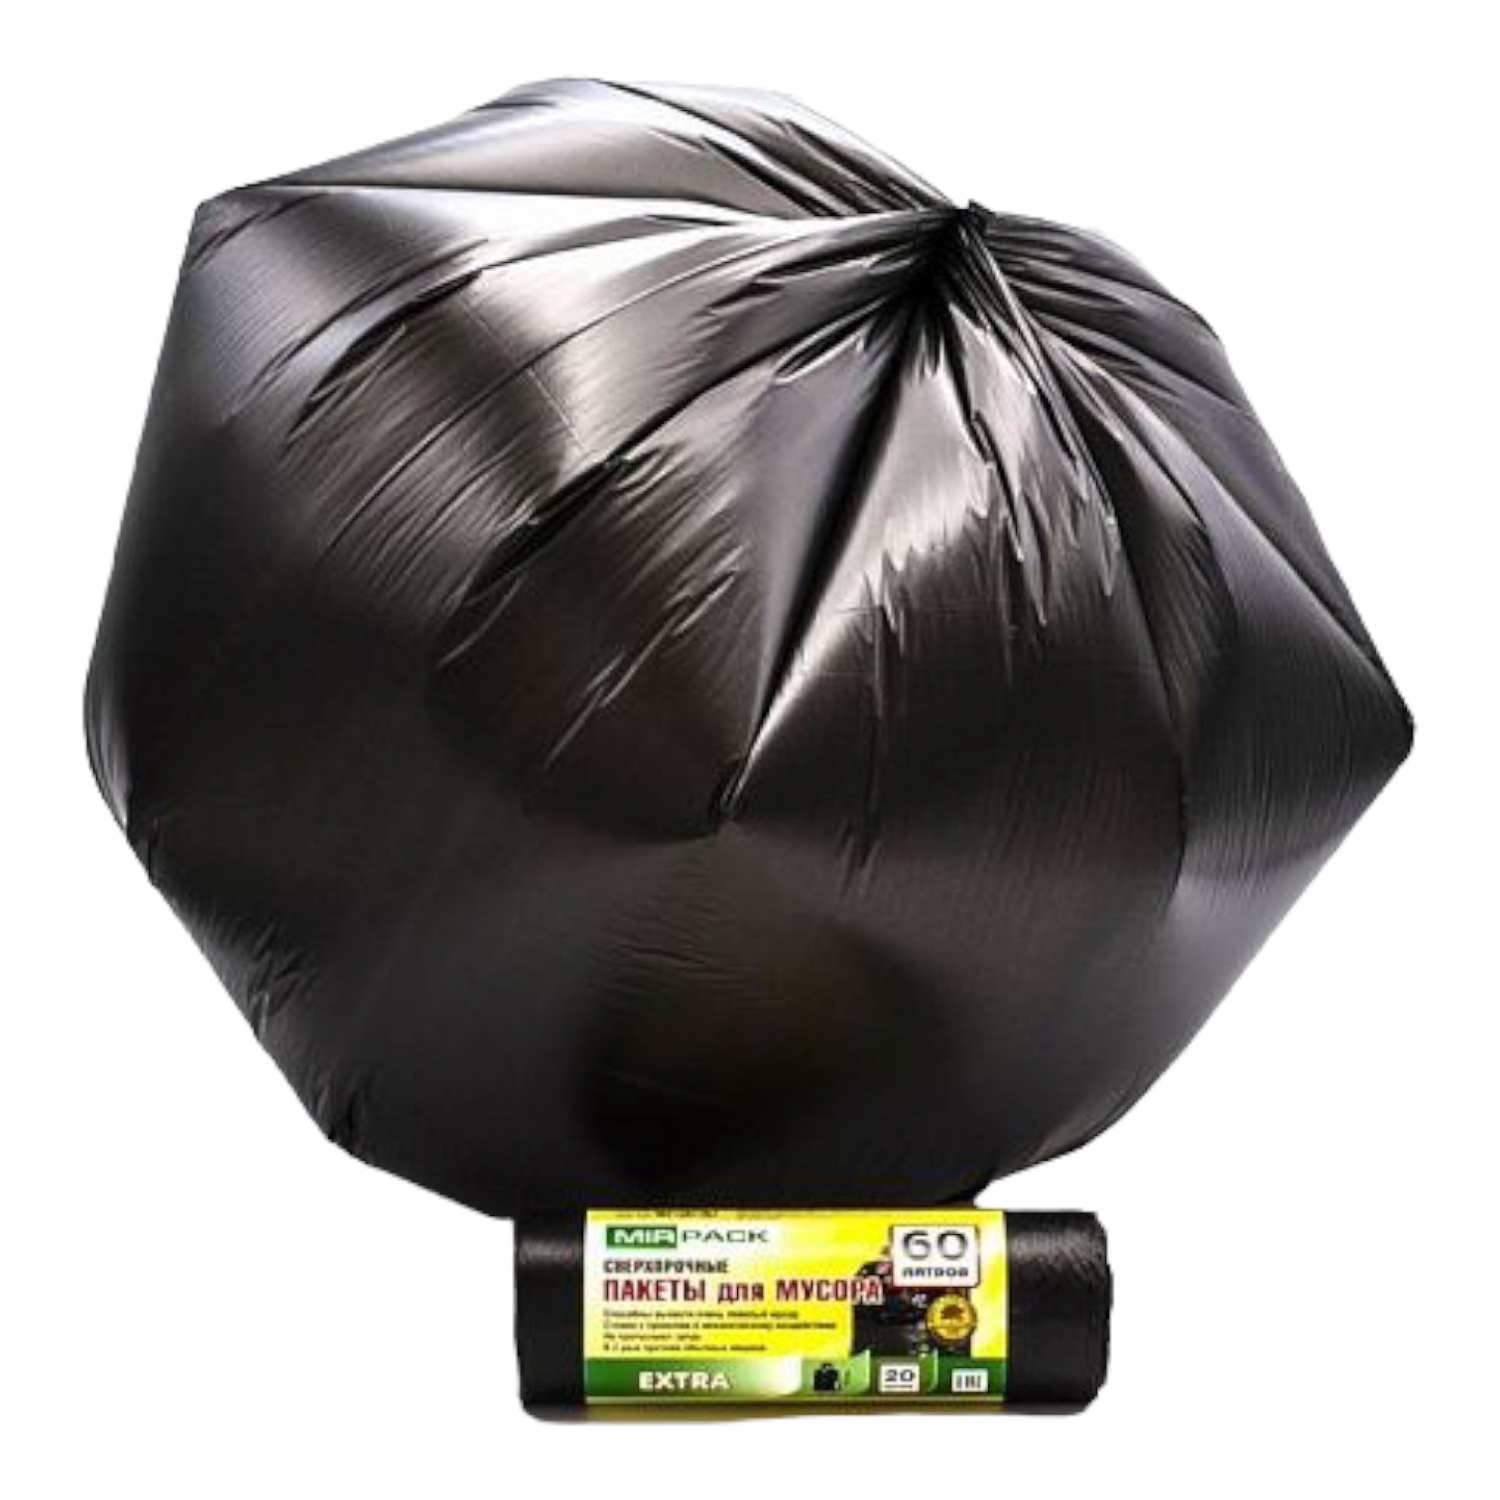 Мешки для мусора MirPack 60 литров 60х70 см черные в рулоне - фото 5